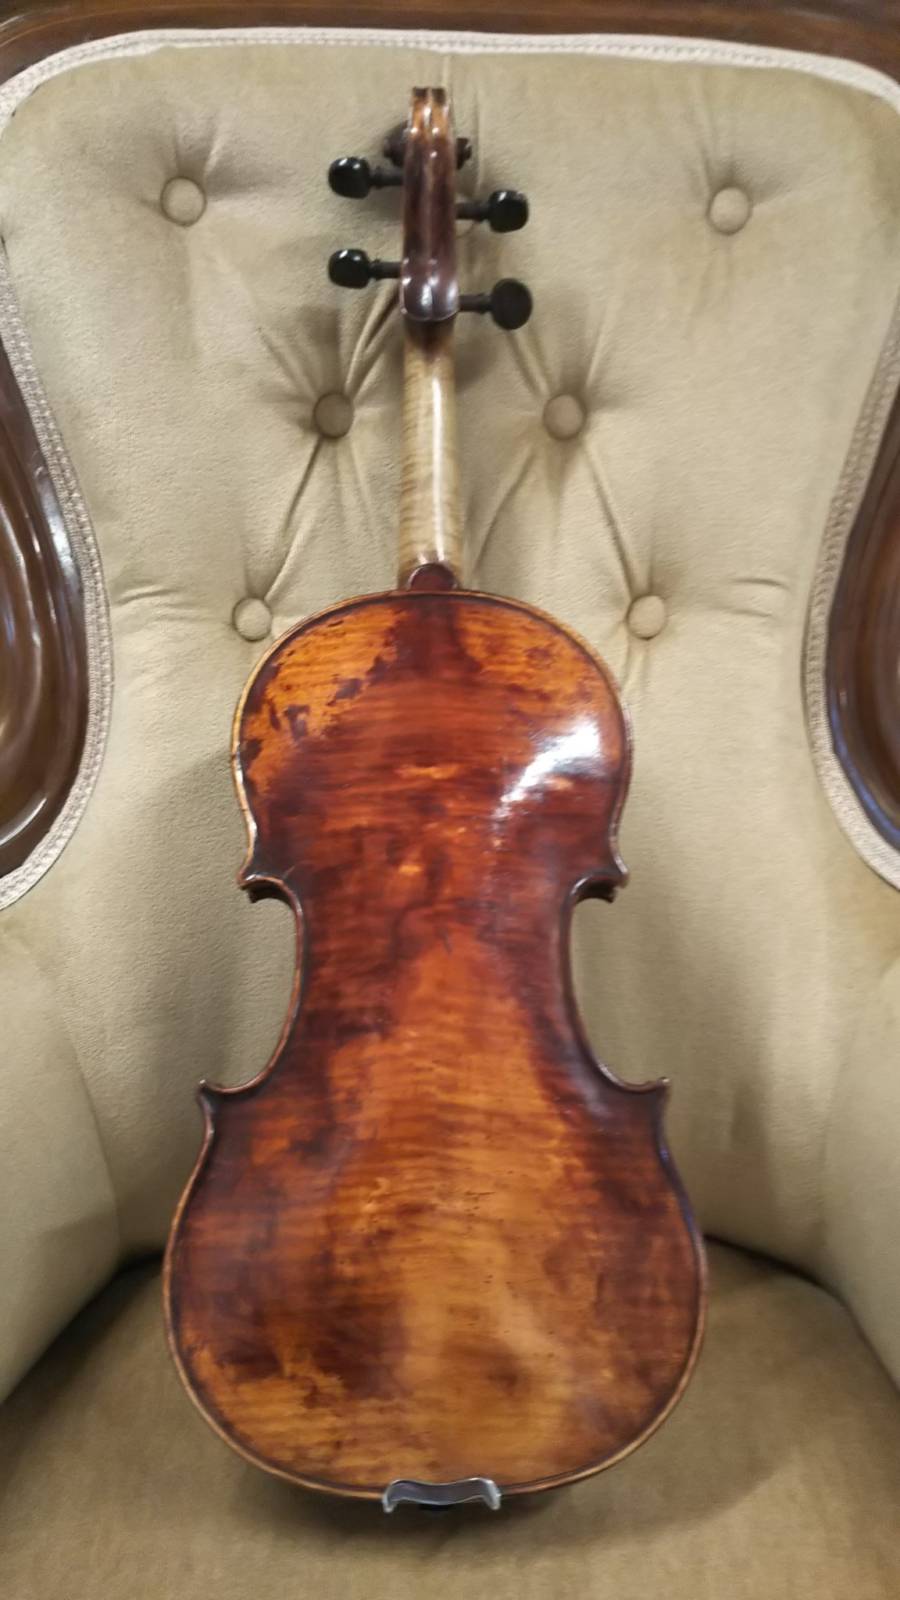 新入荷バイオリン